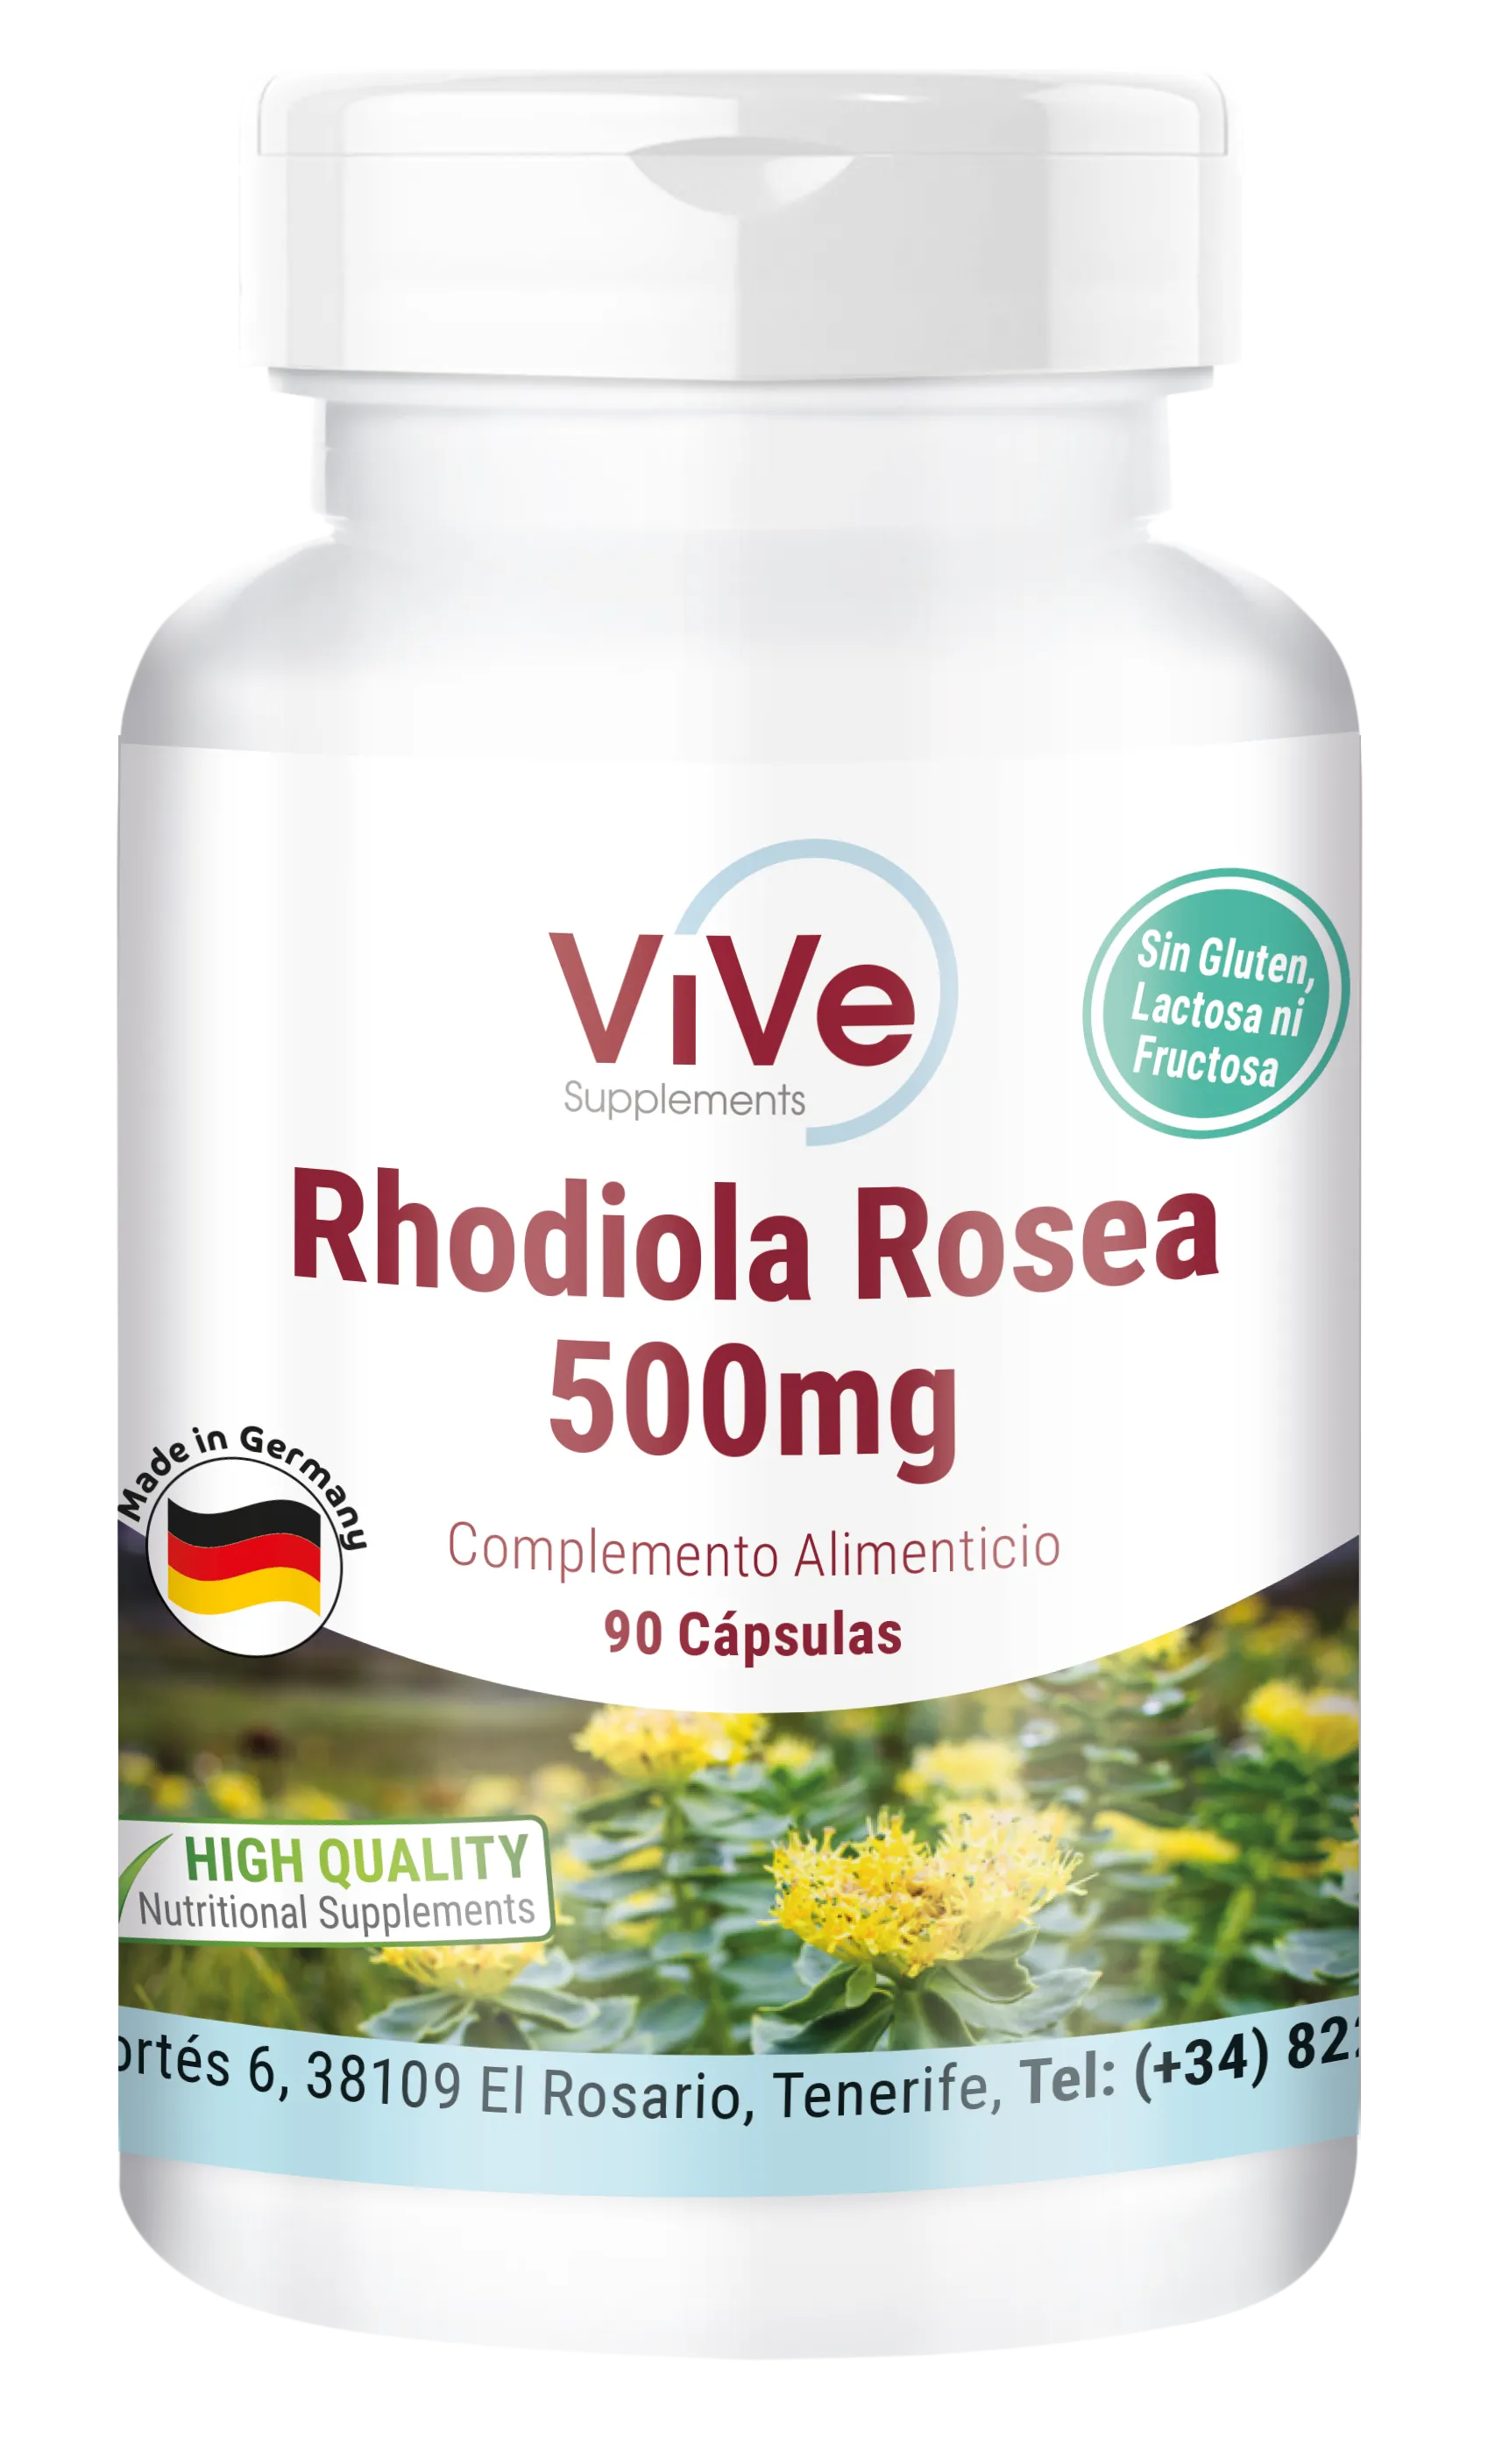 Rhodiola Rosea 500mg, 90 Capsules